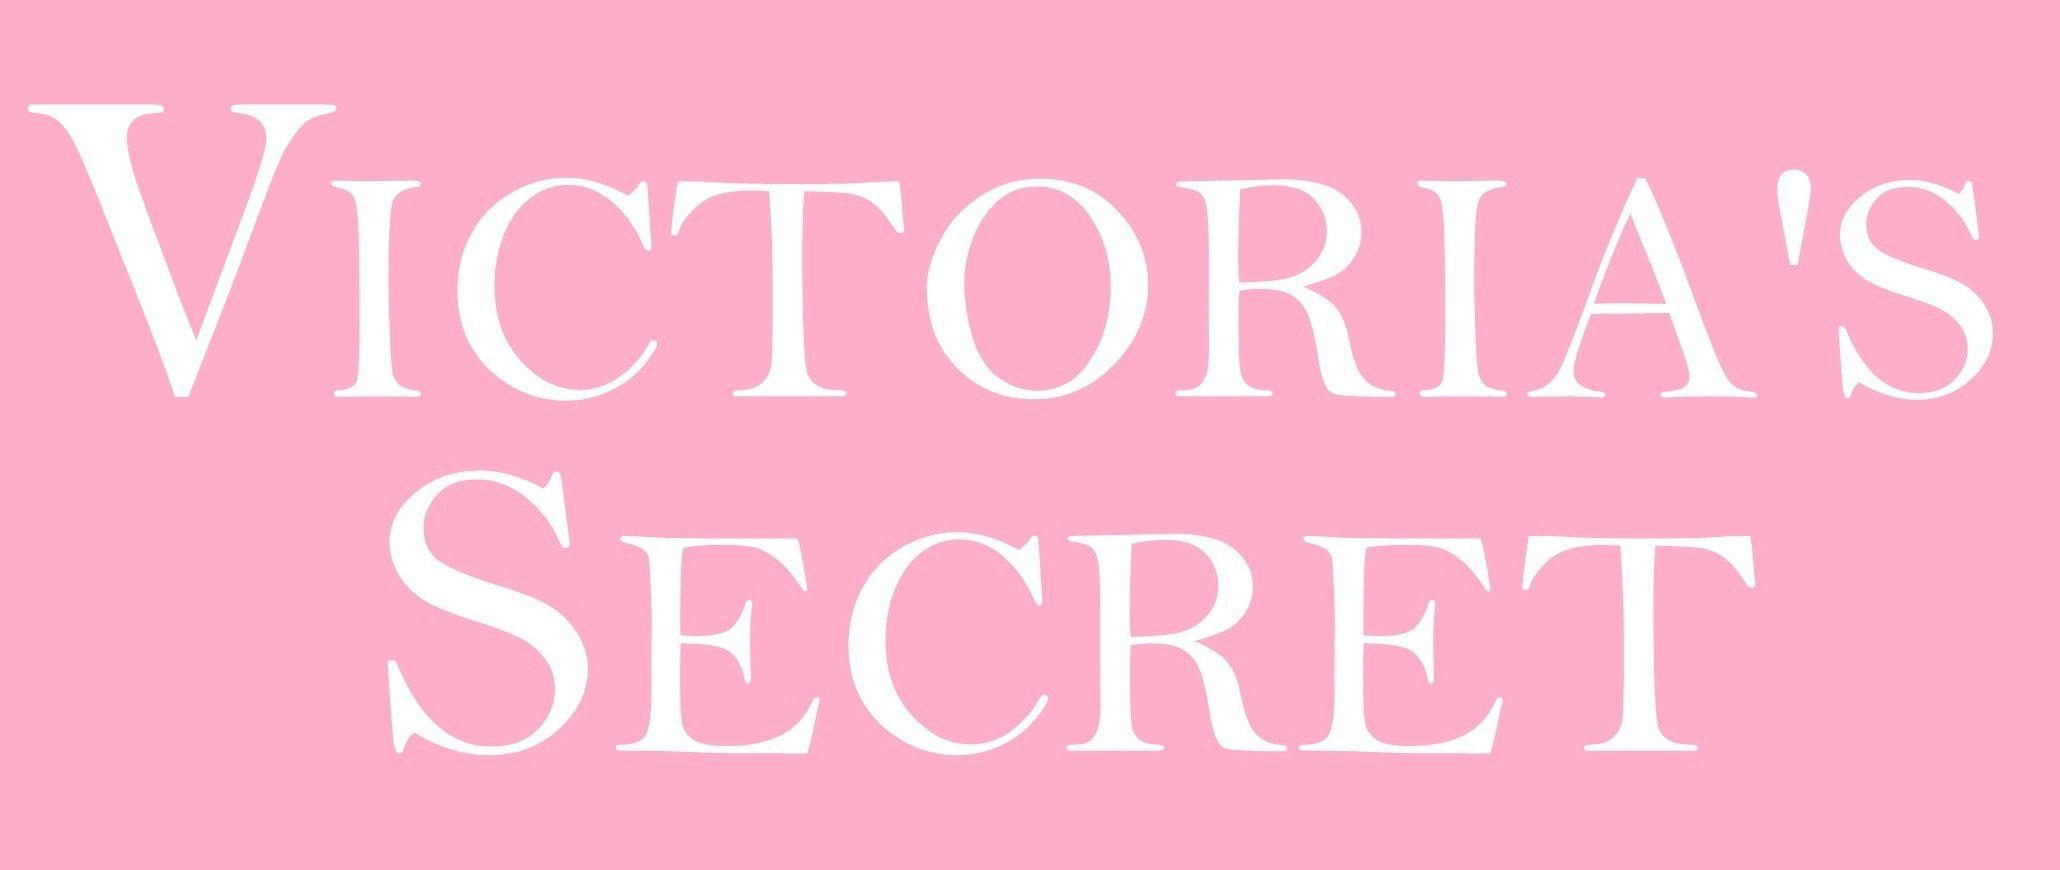 Victorias Secret Pink Wallpaper 45 images